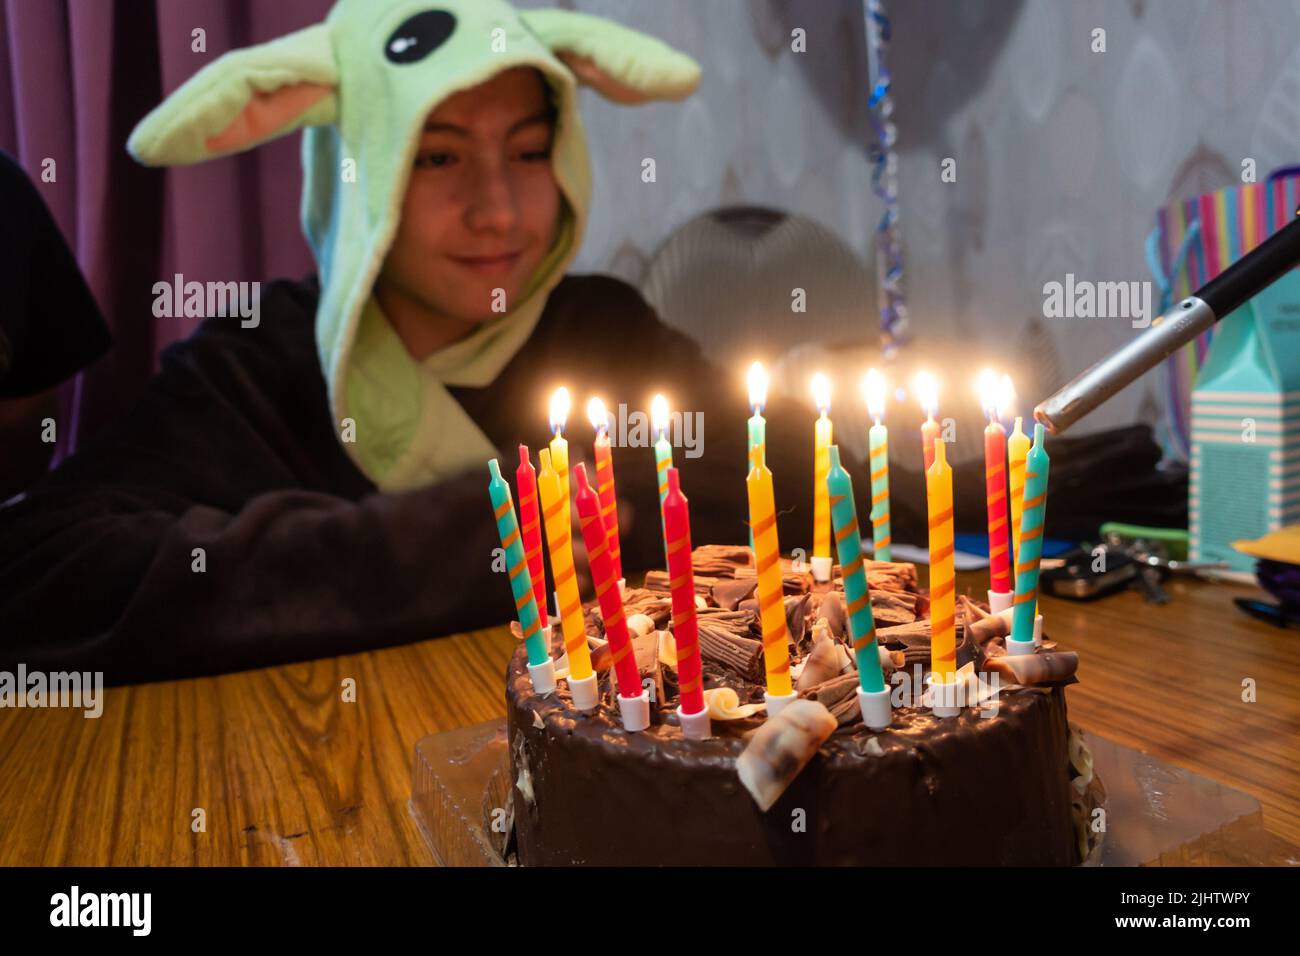 Kerzen auf einem Schokoladengeburtstag, der mit einem Gasfeuerzeug angezündet wird, während der Geburtstagsjunge zuschaut. Stockfoto